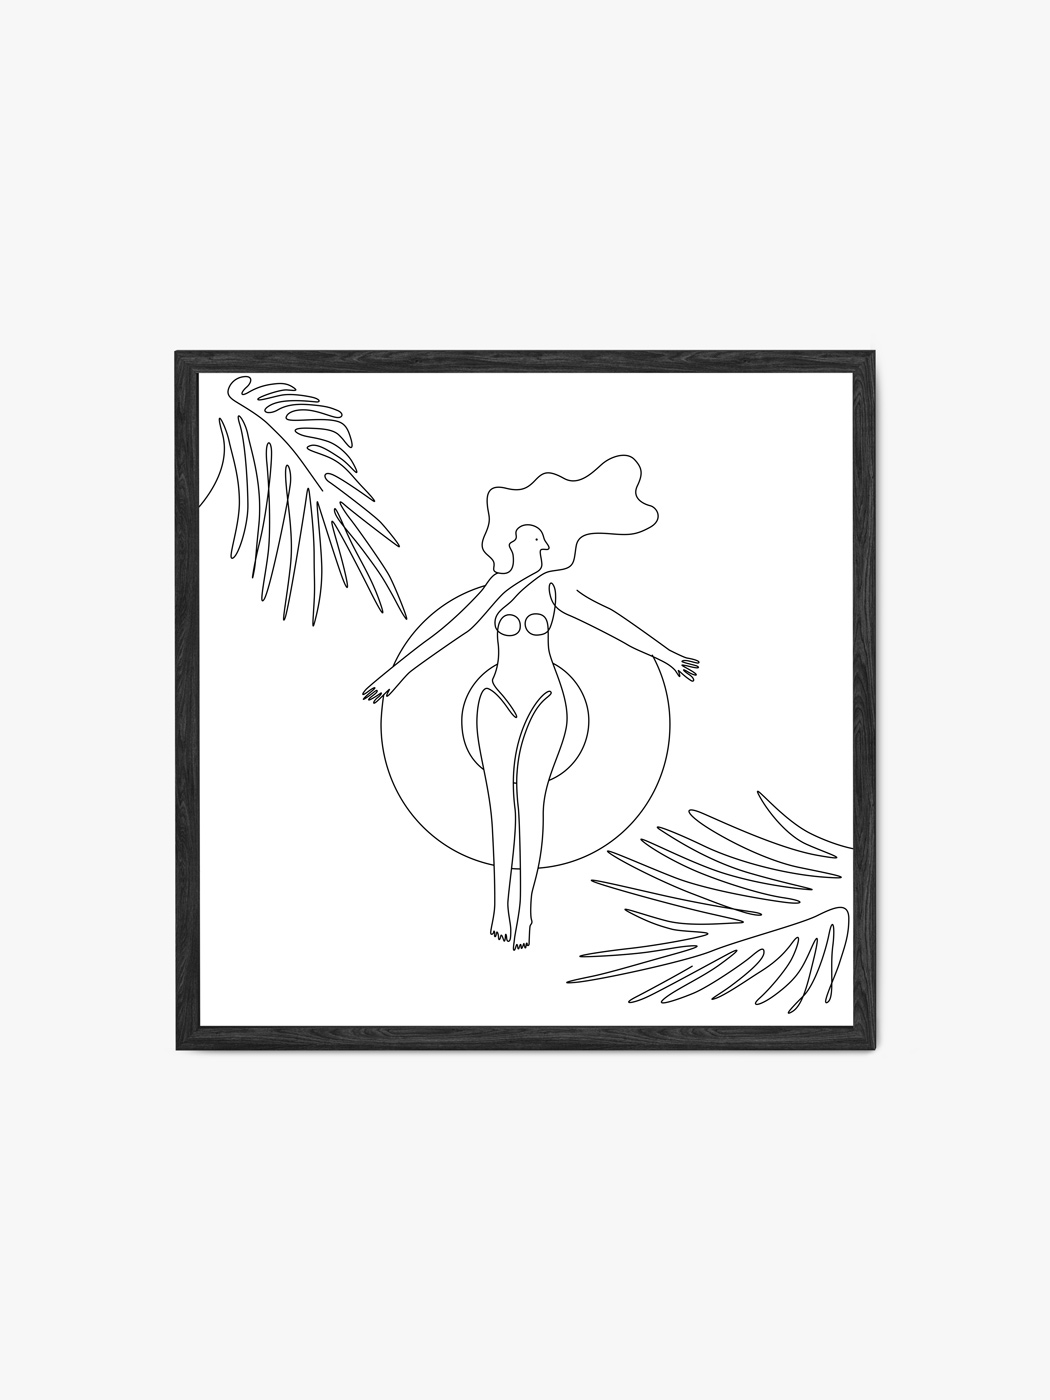 Obraz akustyczny - Plakat line art kobieta opala się na kółku w basenie - Dominika Jędrzejek